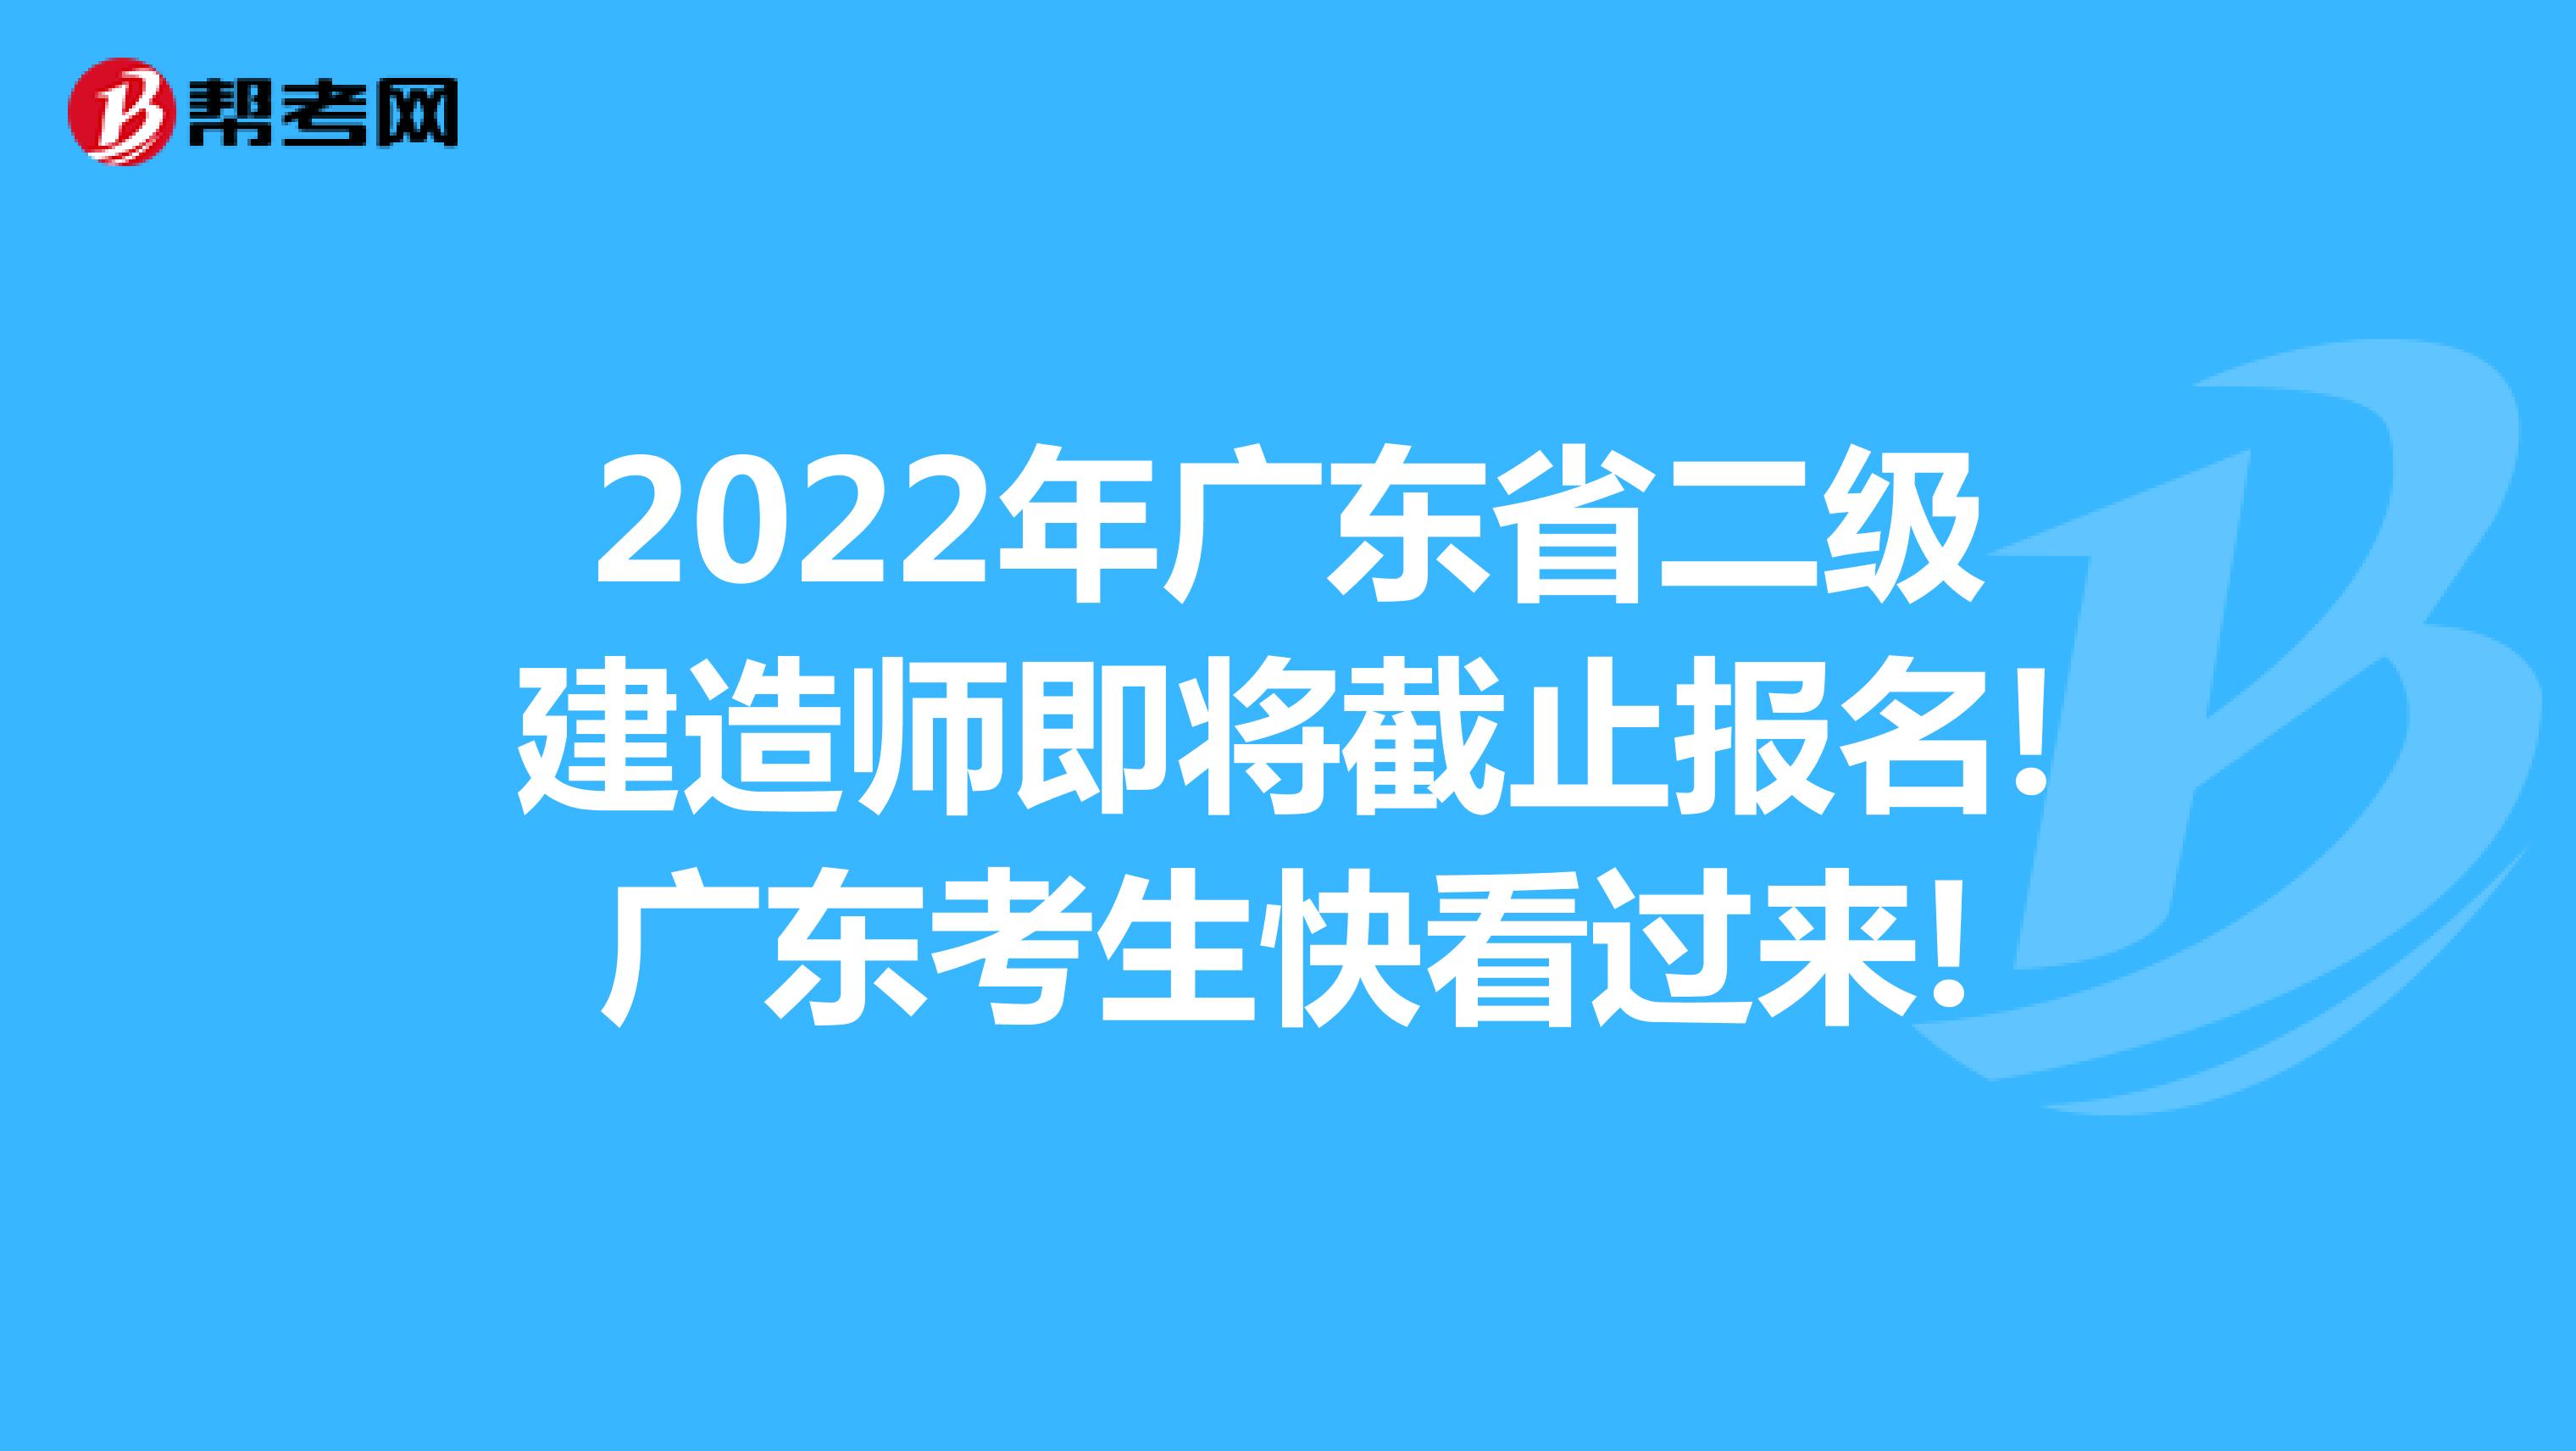 2022年廣東省二級建造師即將截止報名!廣東考生快看過來!